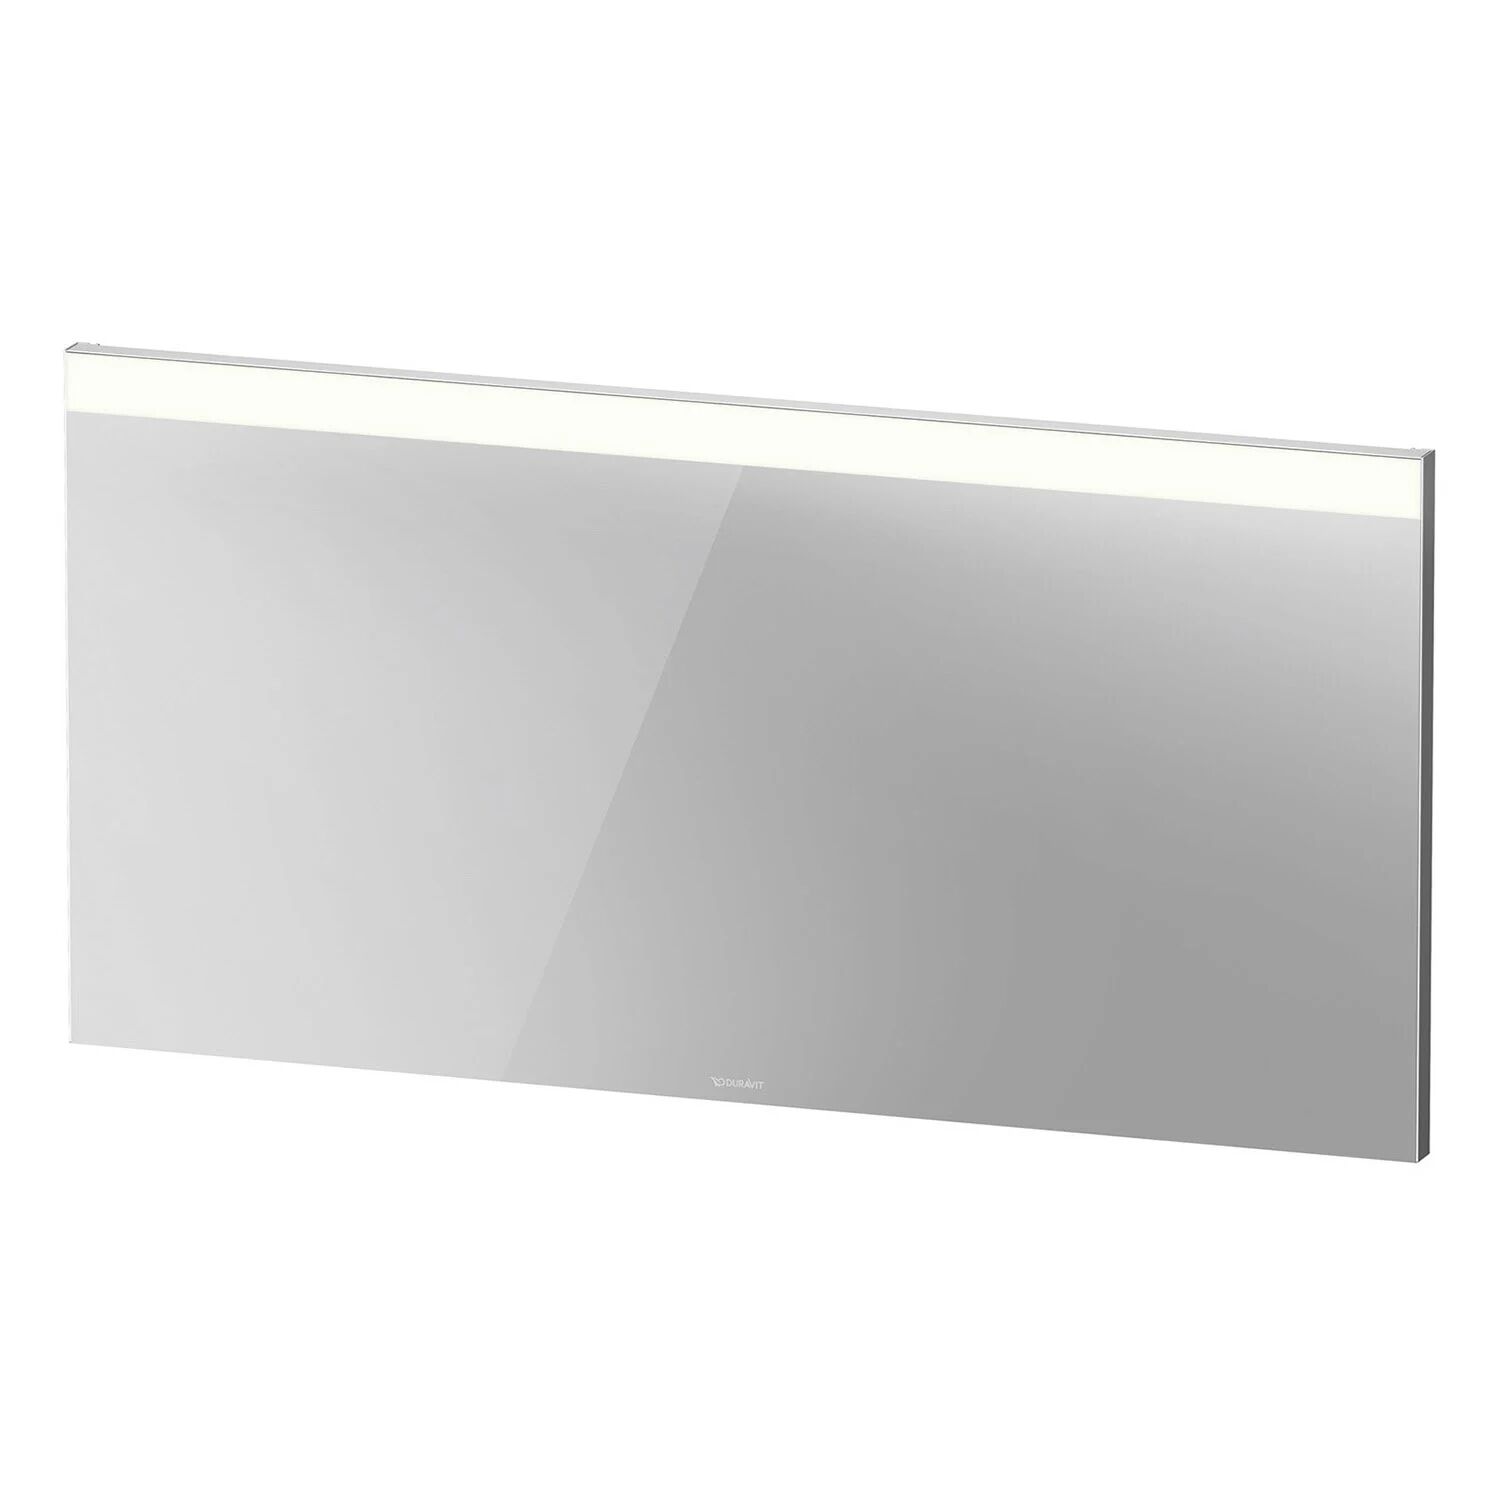 Duravit Spiegel Better Version mit Beleuchtung oben und Sensorschalter 140 cm